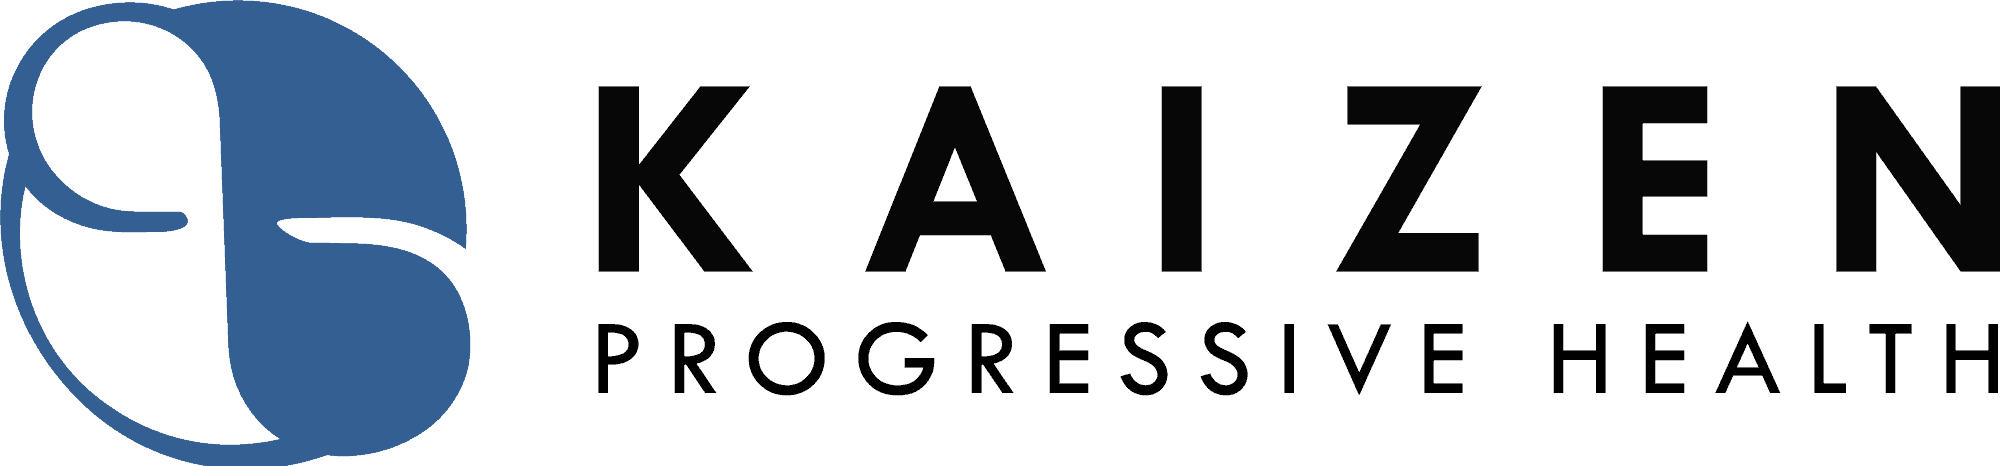 Kaizen Progressive Health logo